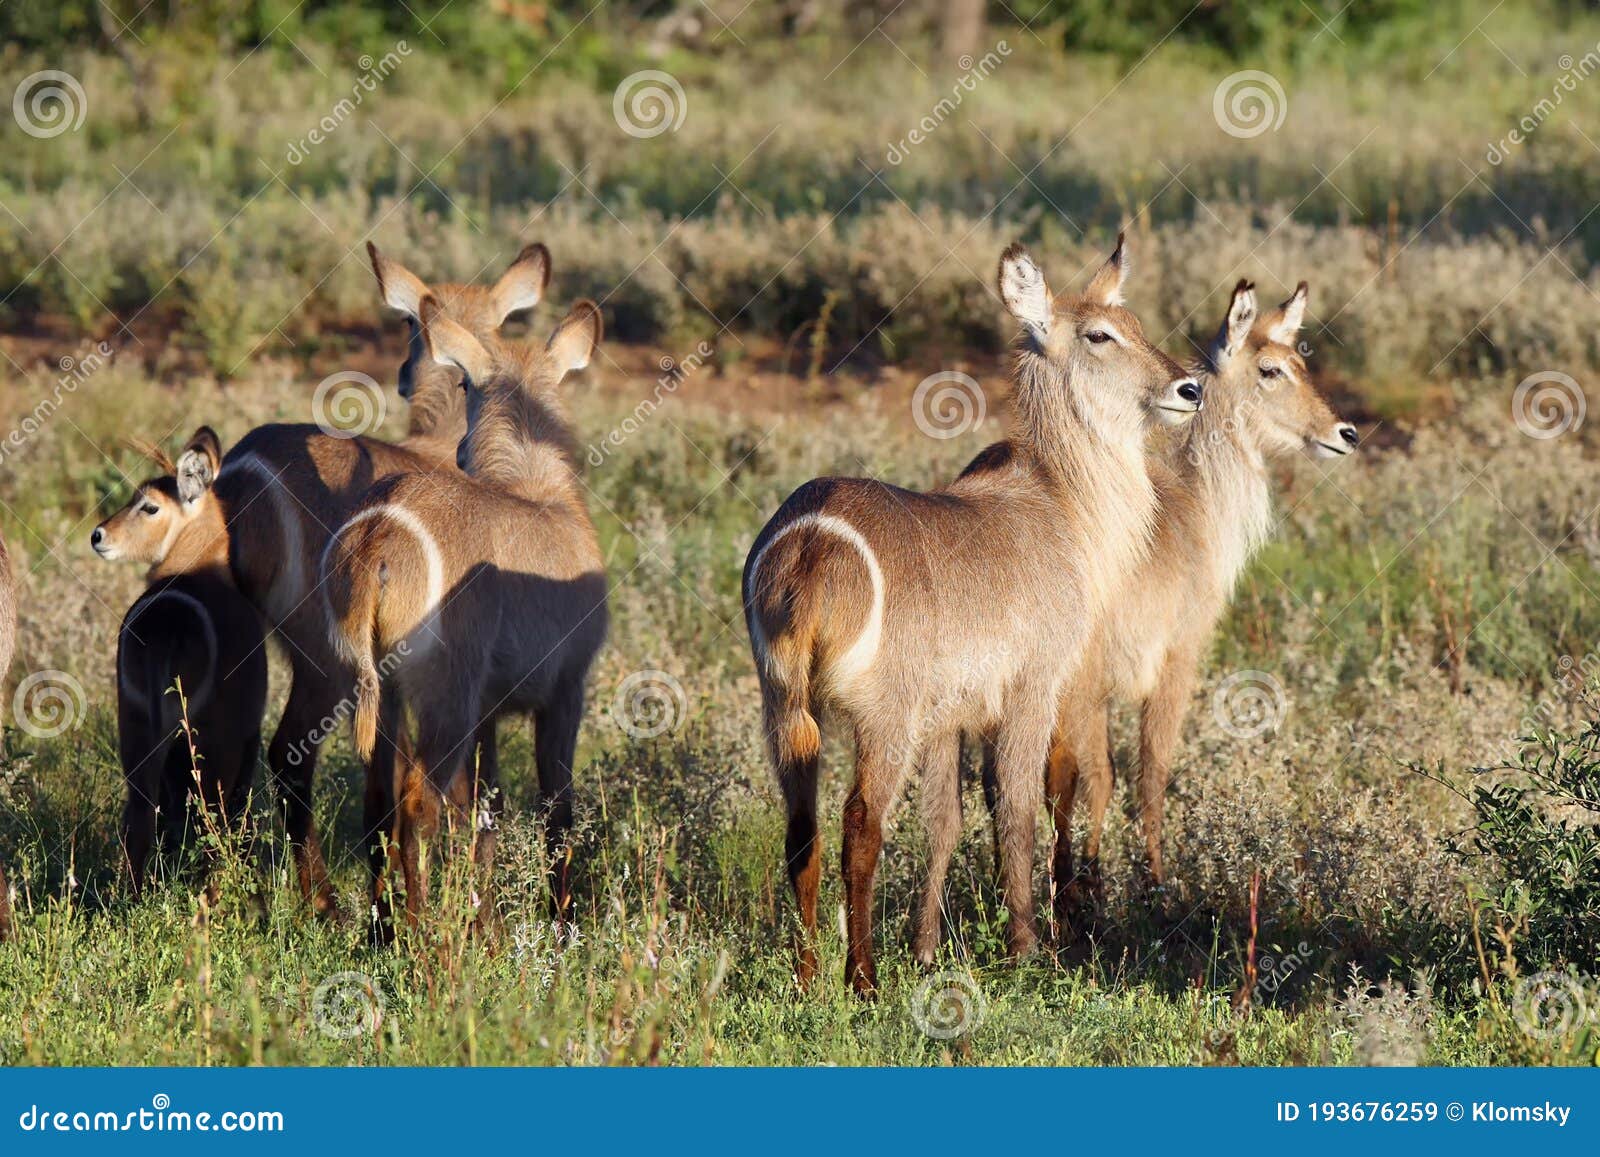 the waterbuck kobus ellipsiprymnus herd of females in savannah